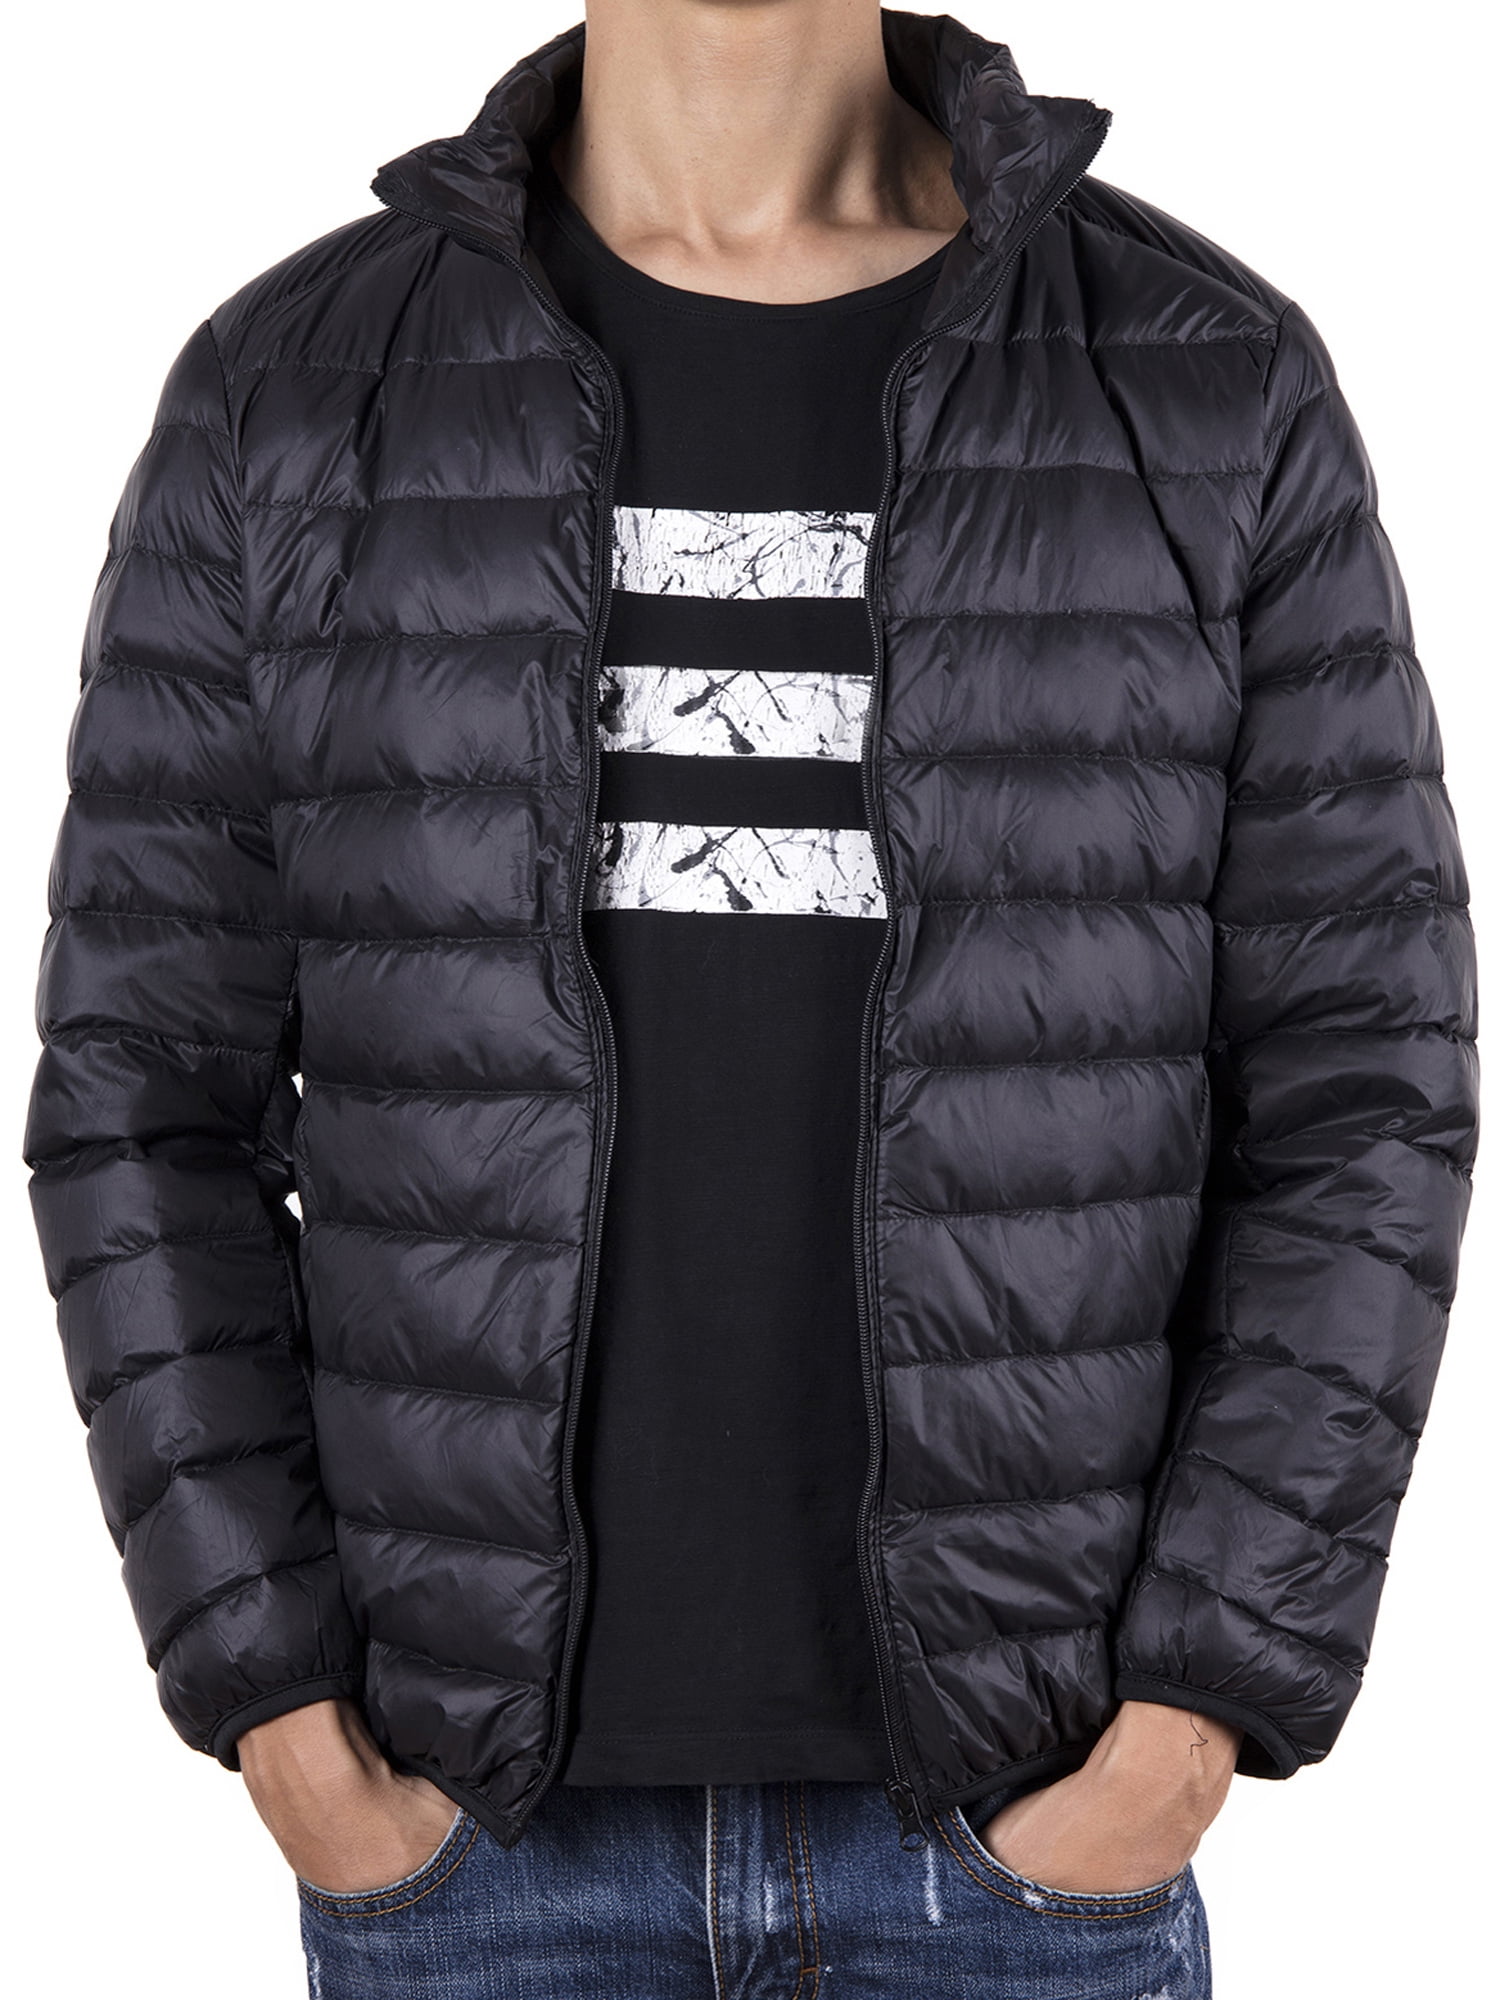 Lelinta - Men's Down Jacket Big &Tall Weatherproof Outerwear Zipper ...